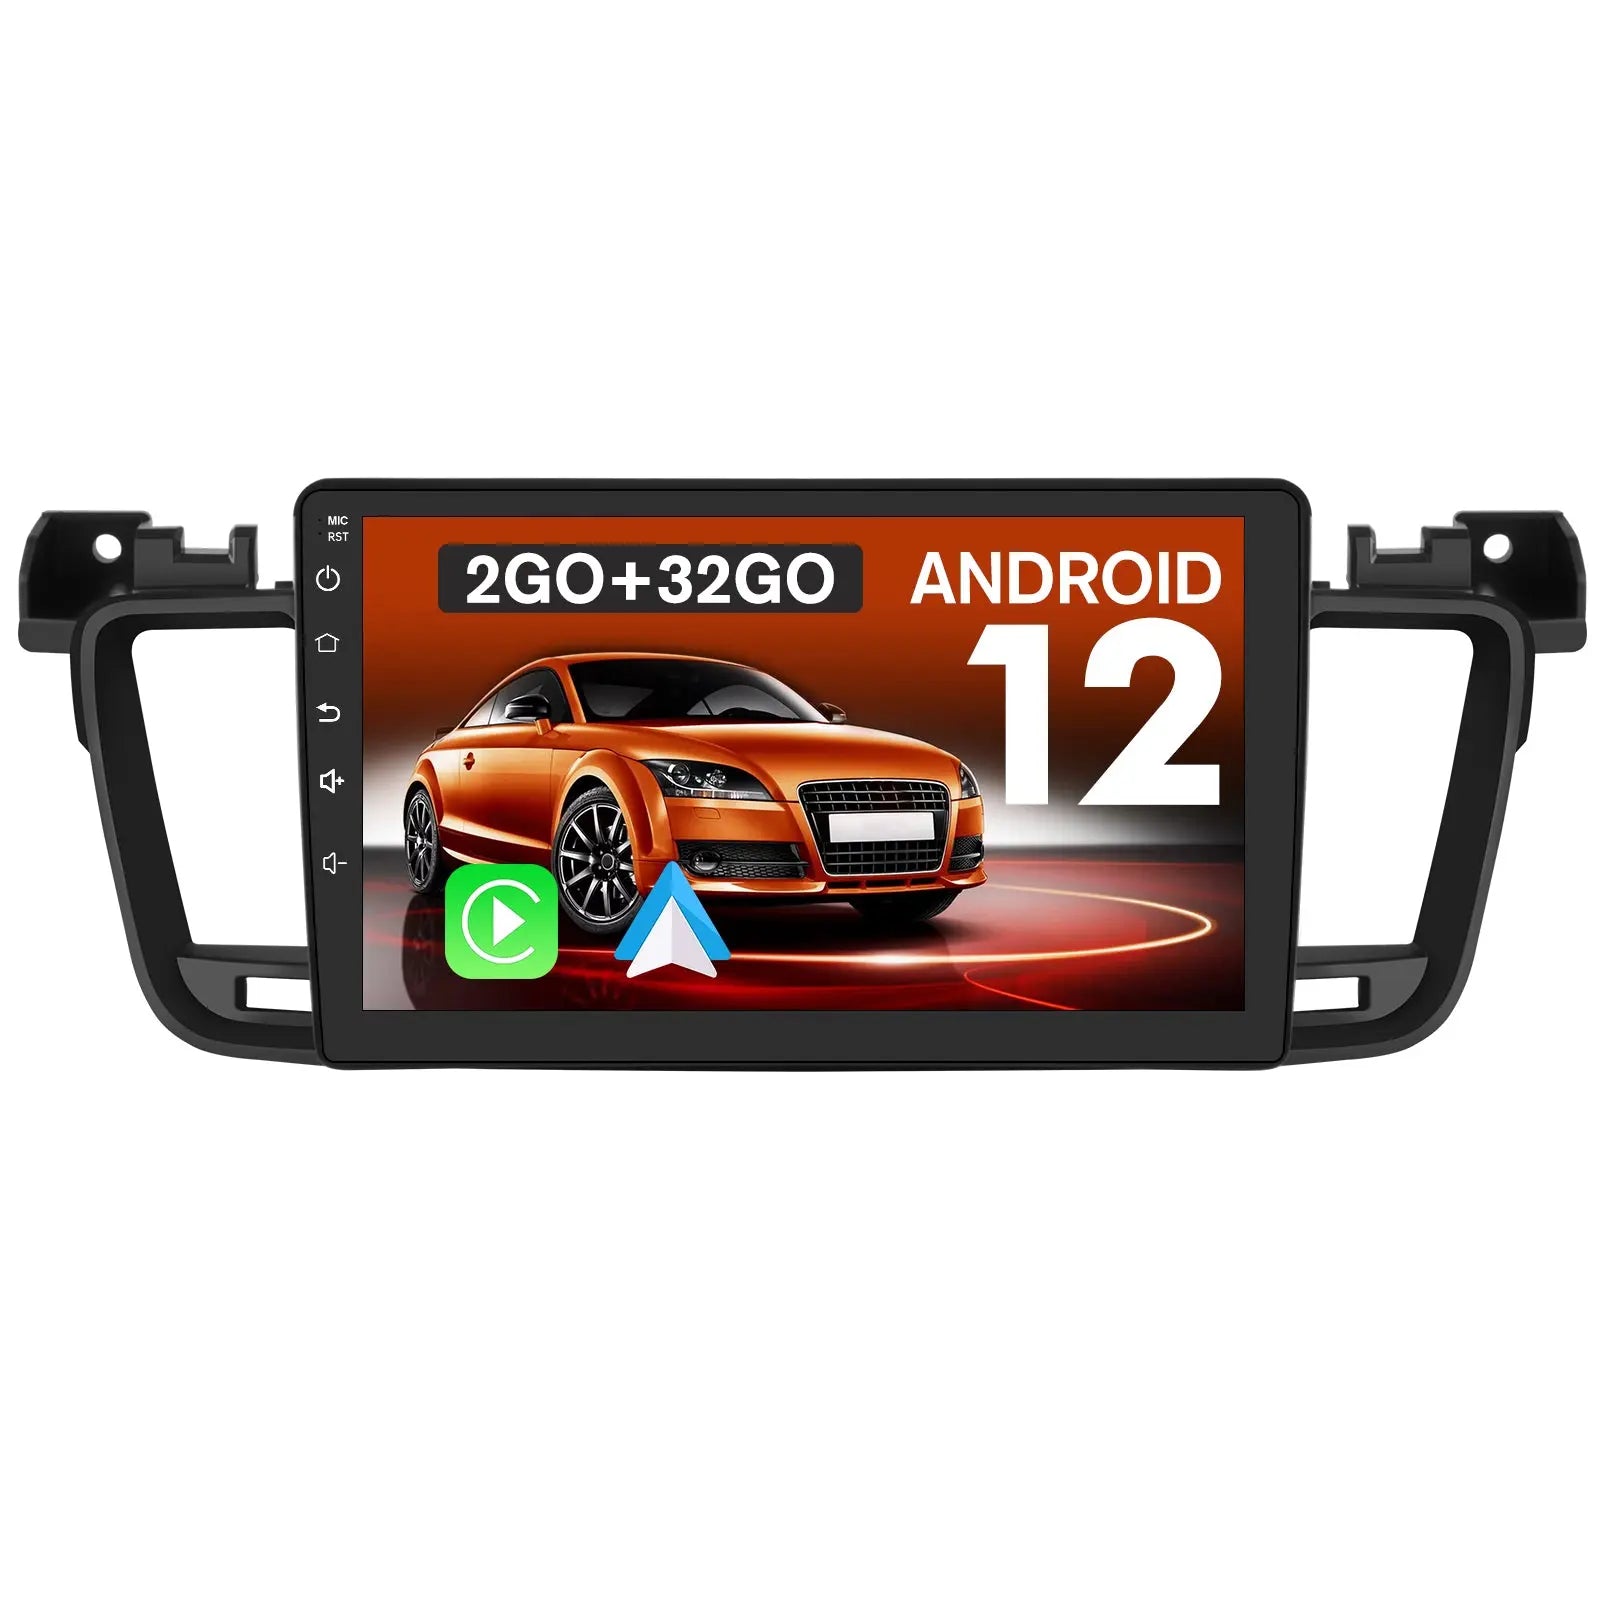 AWESAFE Autoradio Android 12 pour Peugeot 208/2008 [2Go+32Go] 10 Pouces  Écran avec Carplay & Android Auto GPS/Wi-FI/Bluetooth/USB/FM/SD/RDS/Aide au  Parking/Commande au Volant : : High-Tech